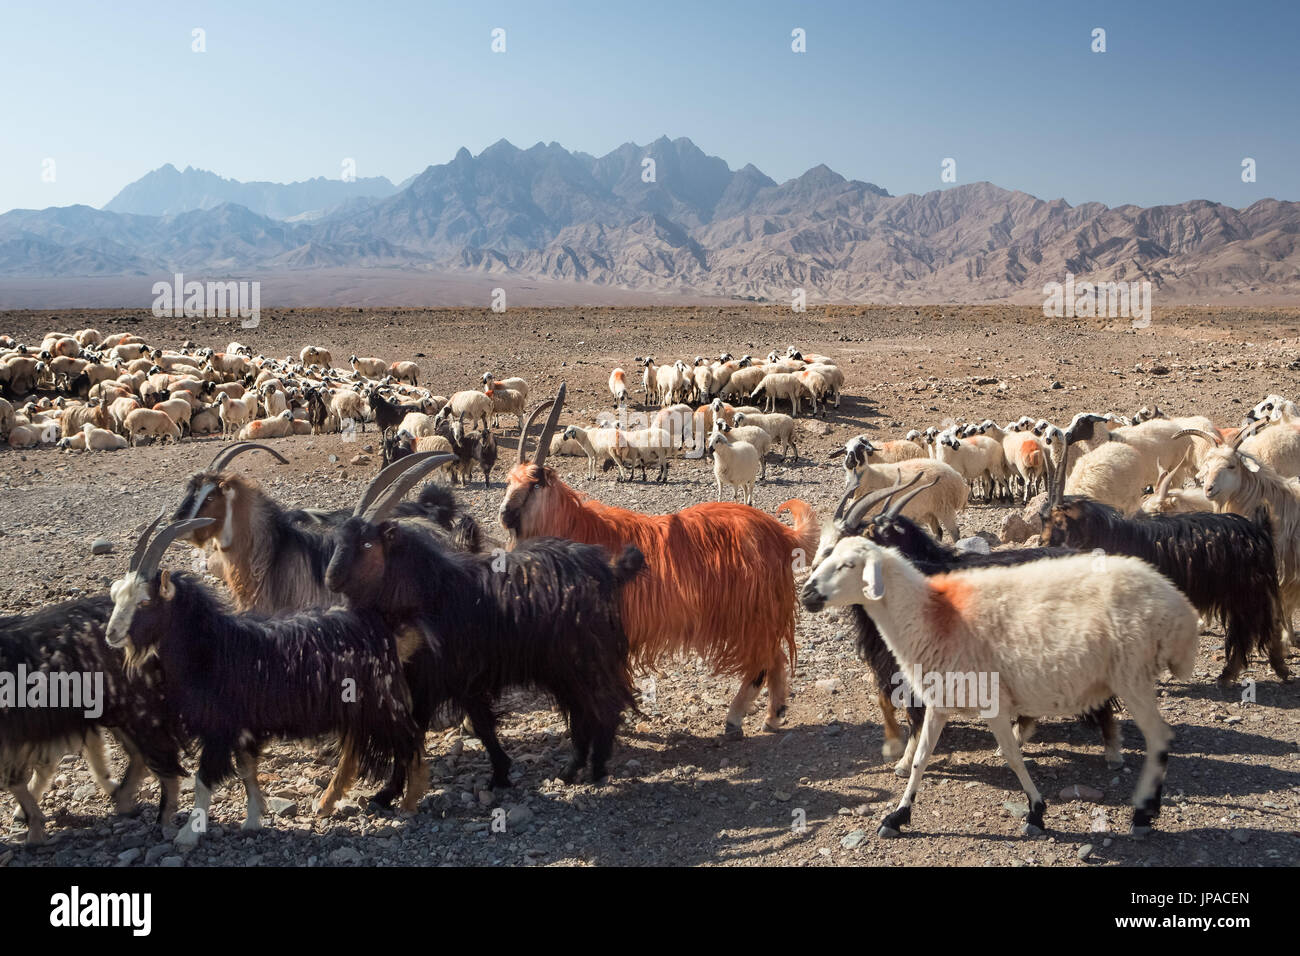 Iran, Near Abyaneh City, Herd Stock Photo